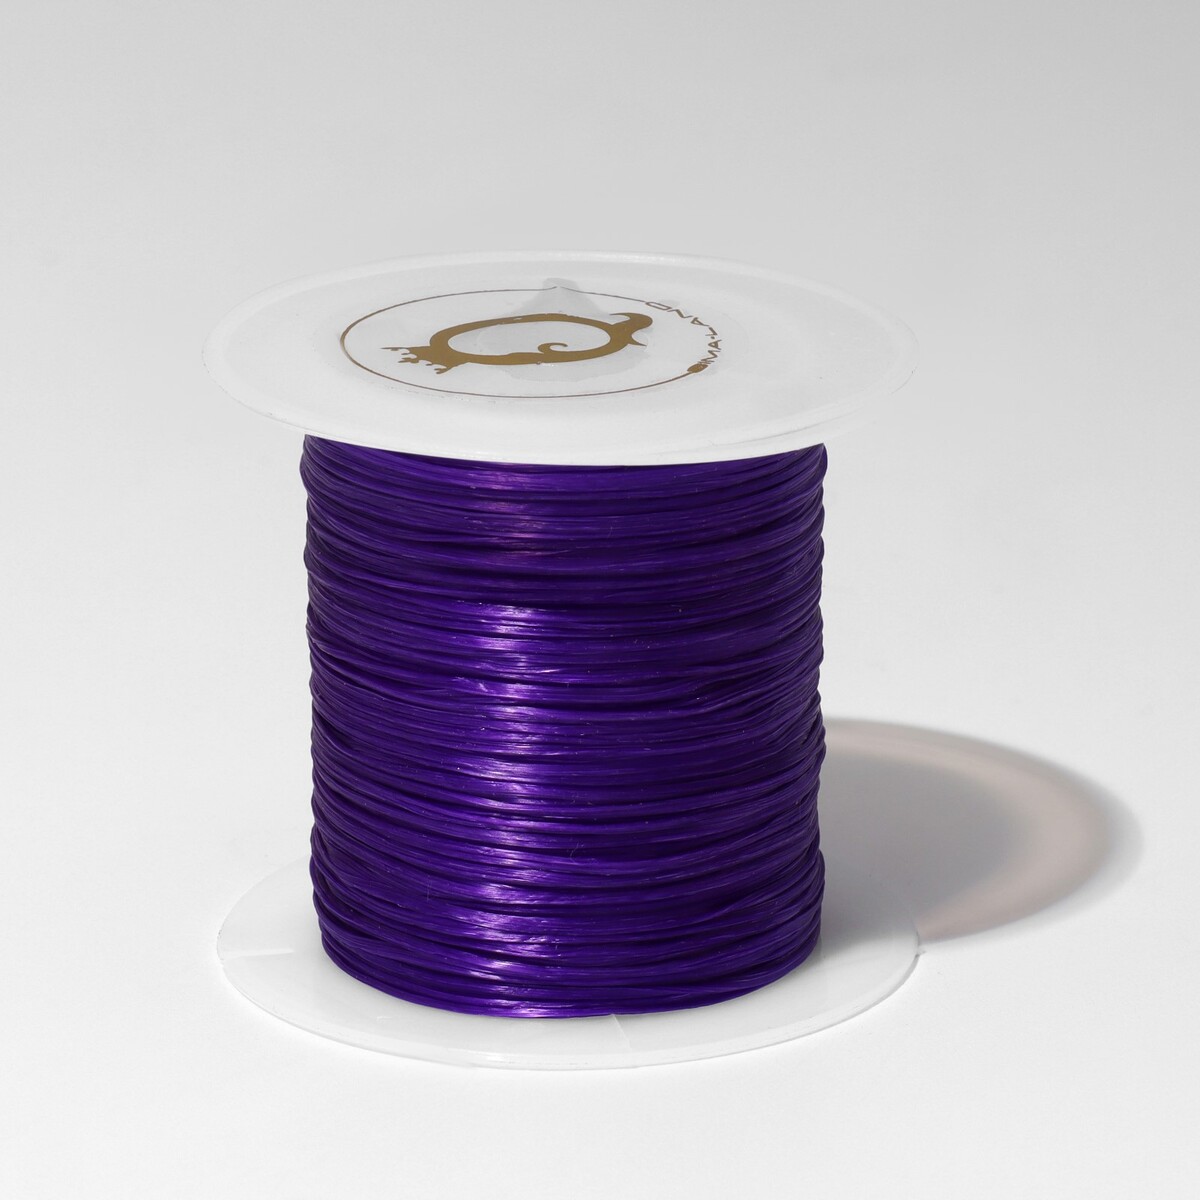 Нить силиконовая (резинка) d=0,5 мм, l=10 м (прочность 2250 денье), цвет фиолетовый